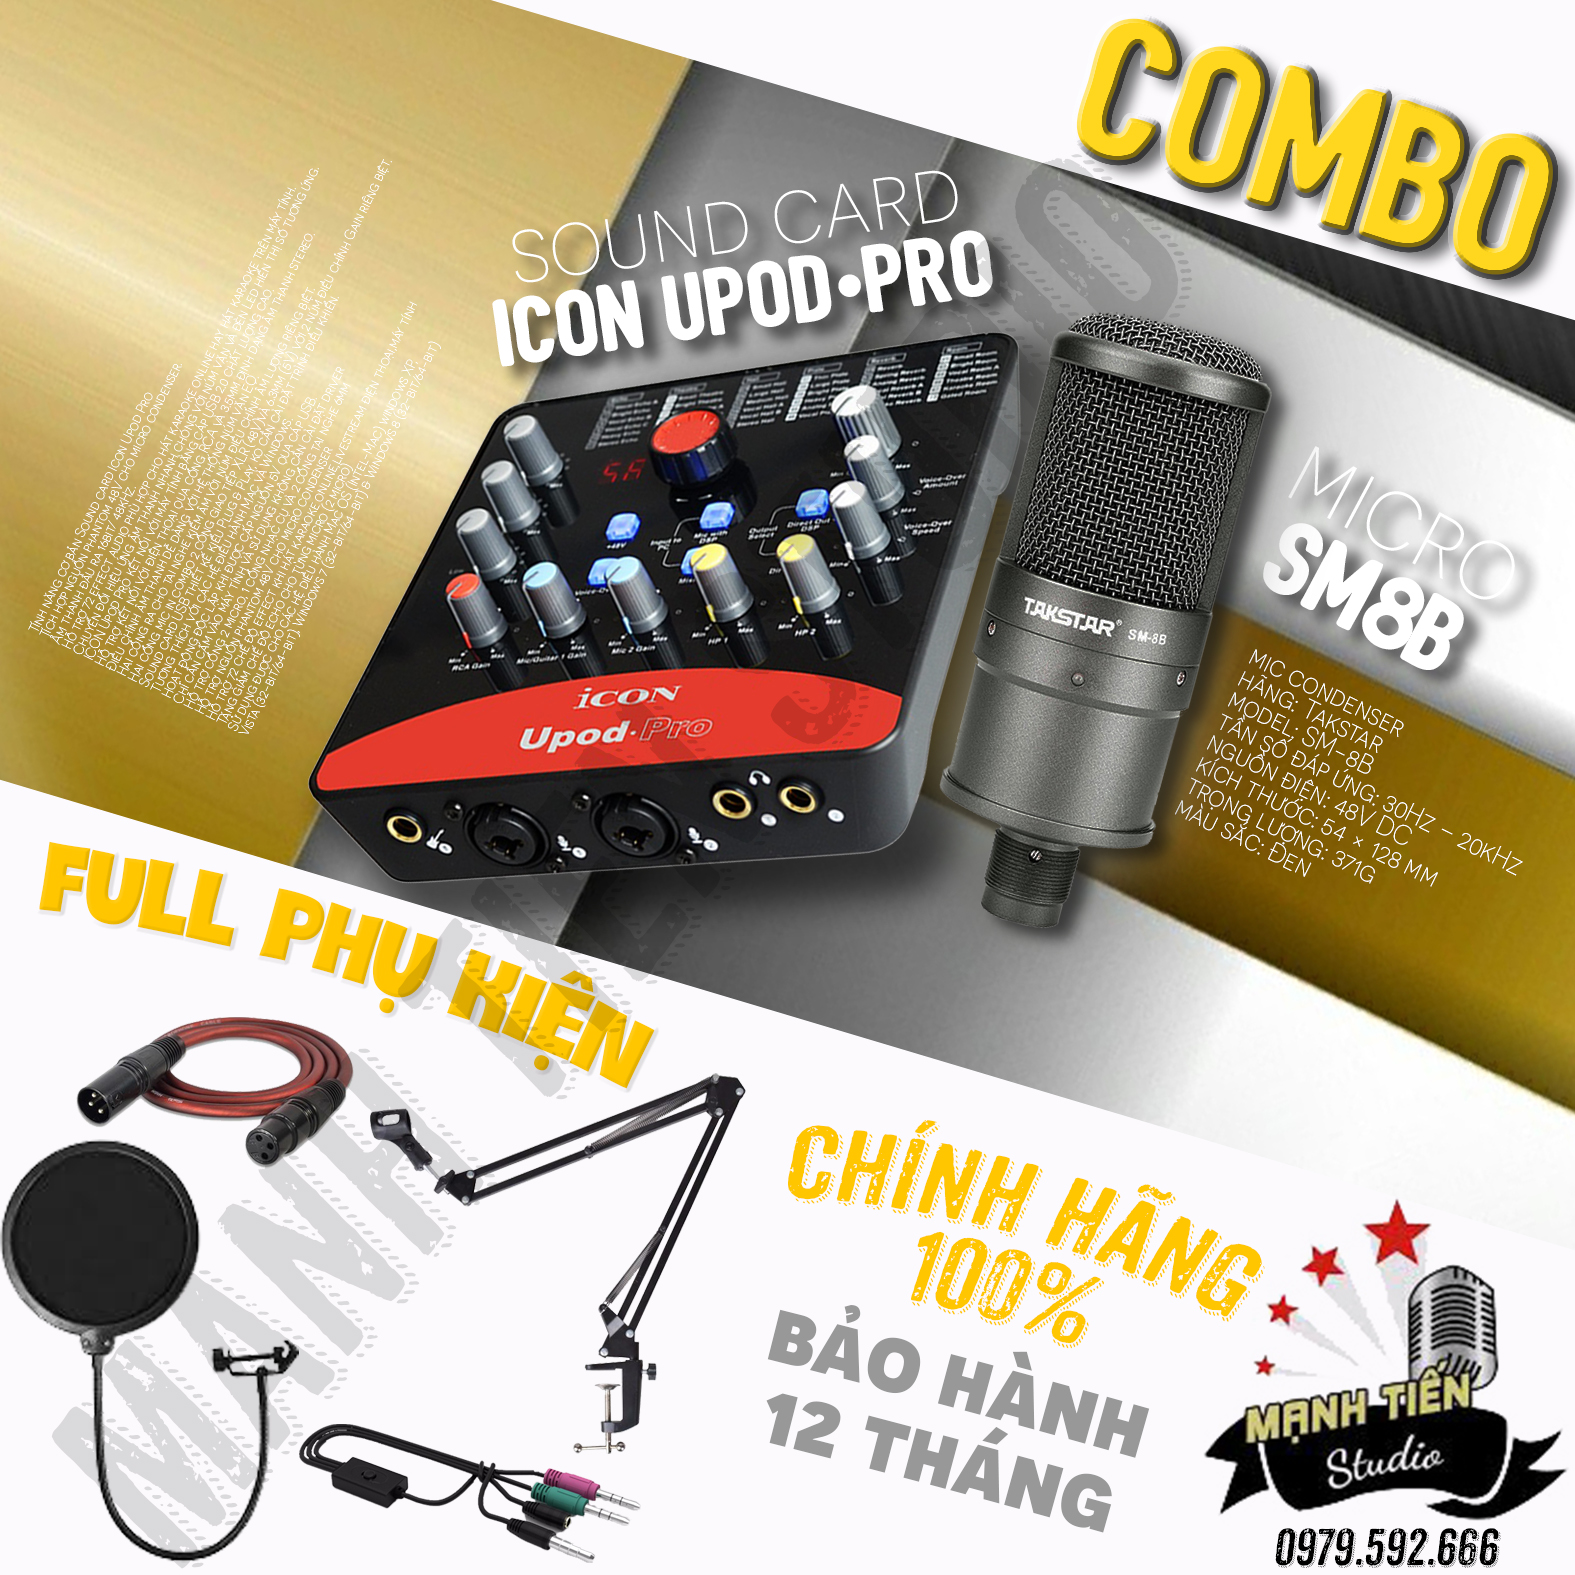 XẢ KHO] Combo Micro Takstar PC-K320 + Soundcard Icon Upod Pro + full phụ  kiện, hát karaoke, thu âm phòng thu chuyên nghiệp, livestream bán hàng fb,  live bigo,cc talk, lazlive, bộ